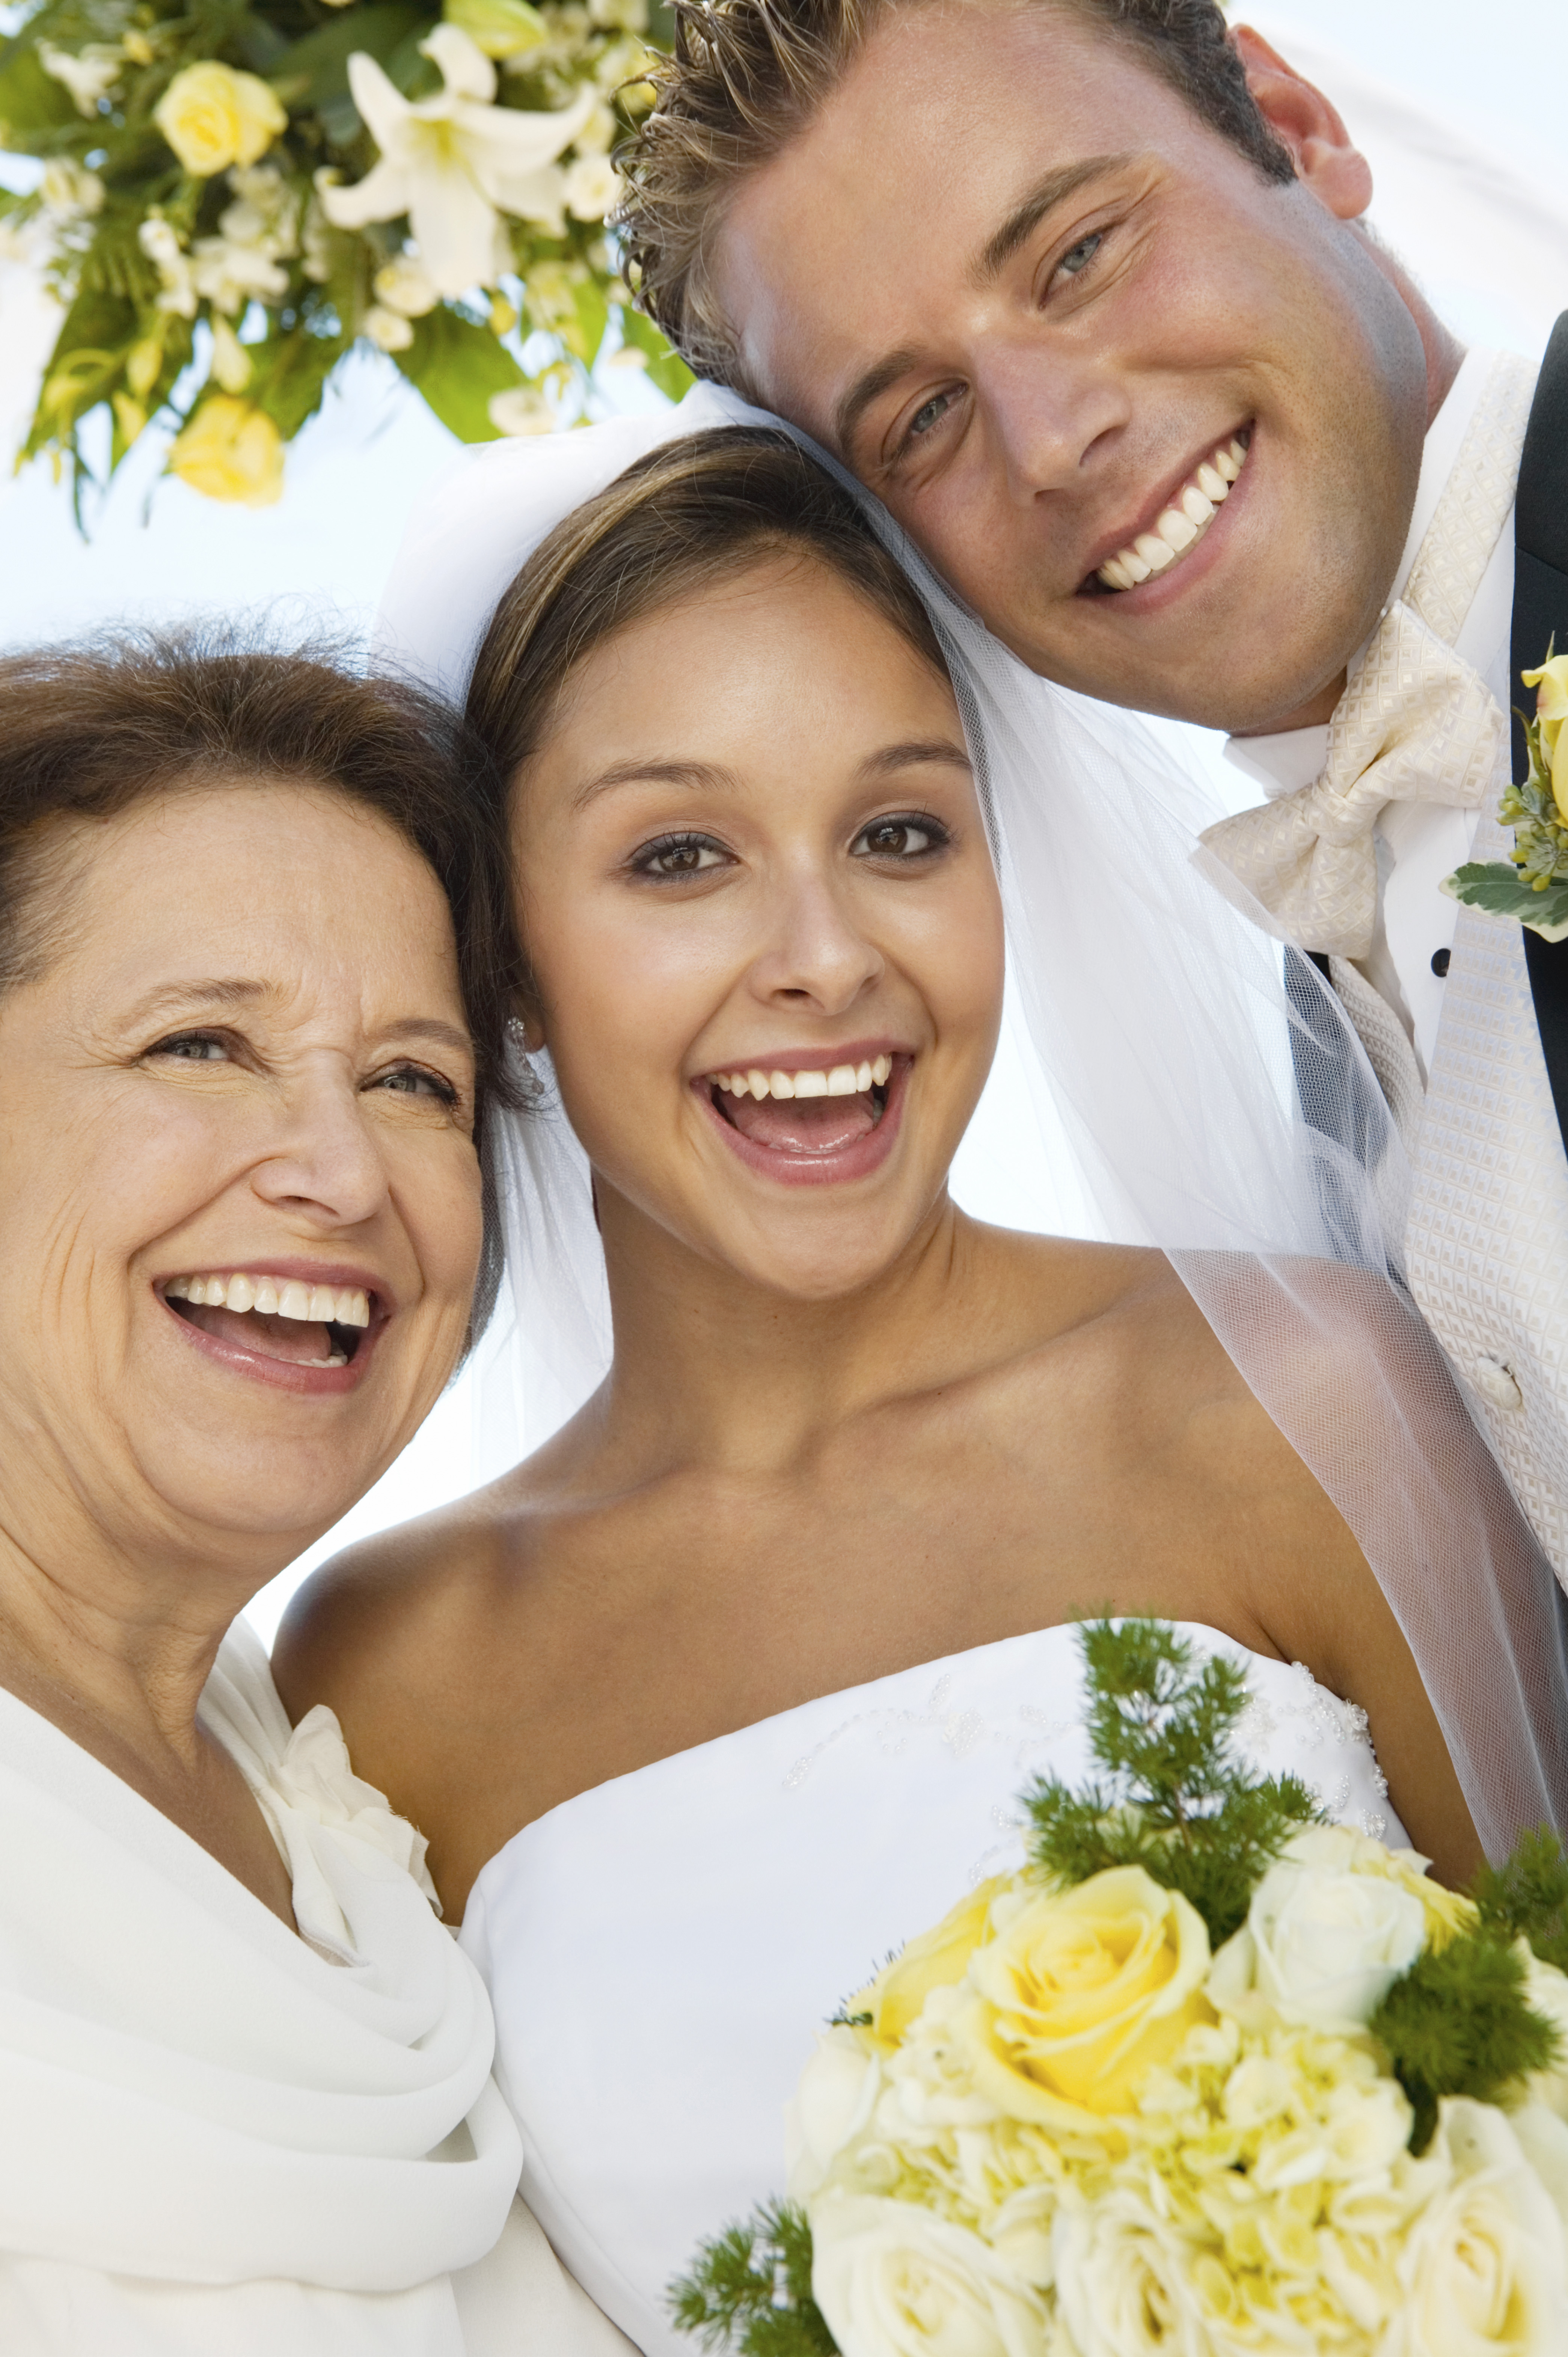 Eine Braut, ein Bräutigam und eine Mutter | Quelle: Shutterstock